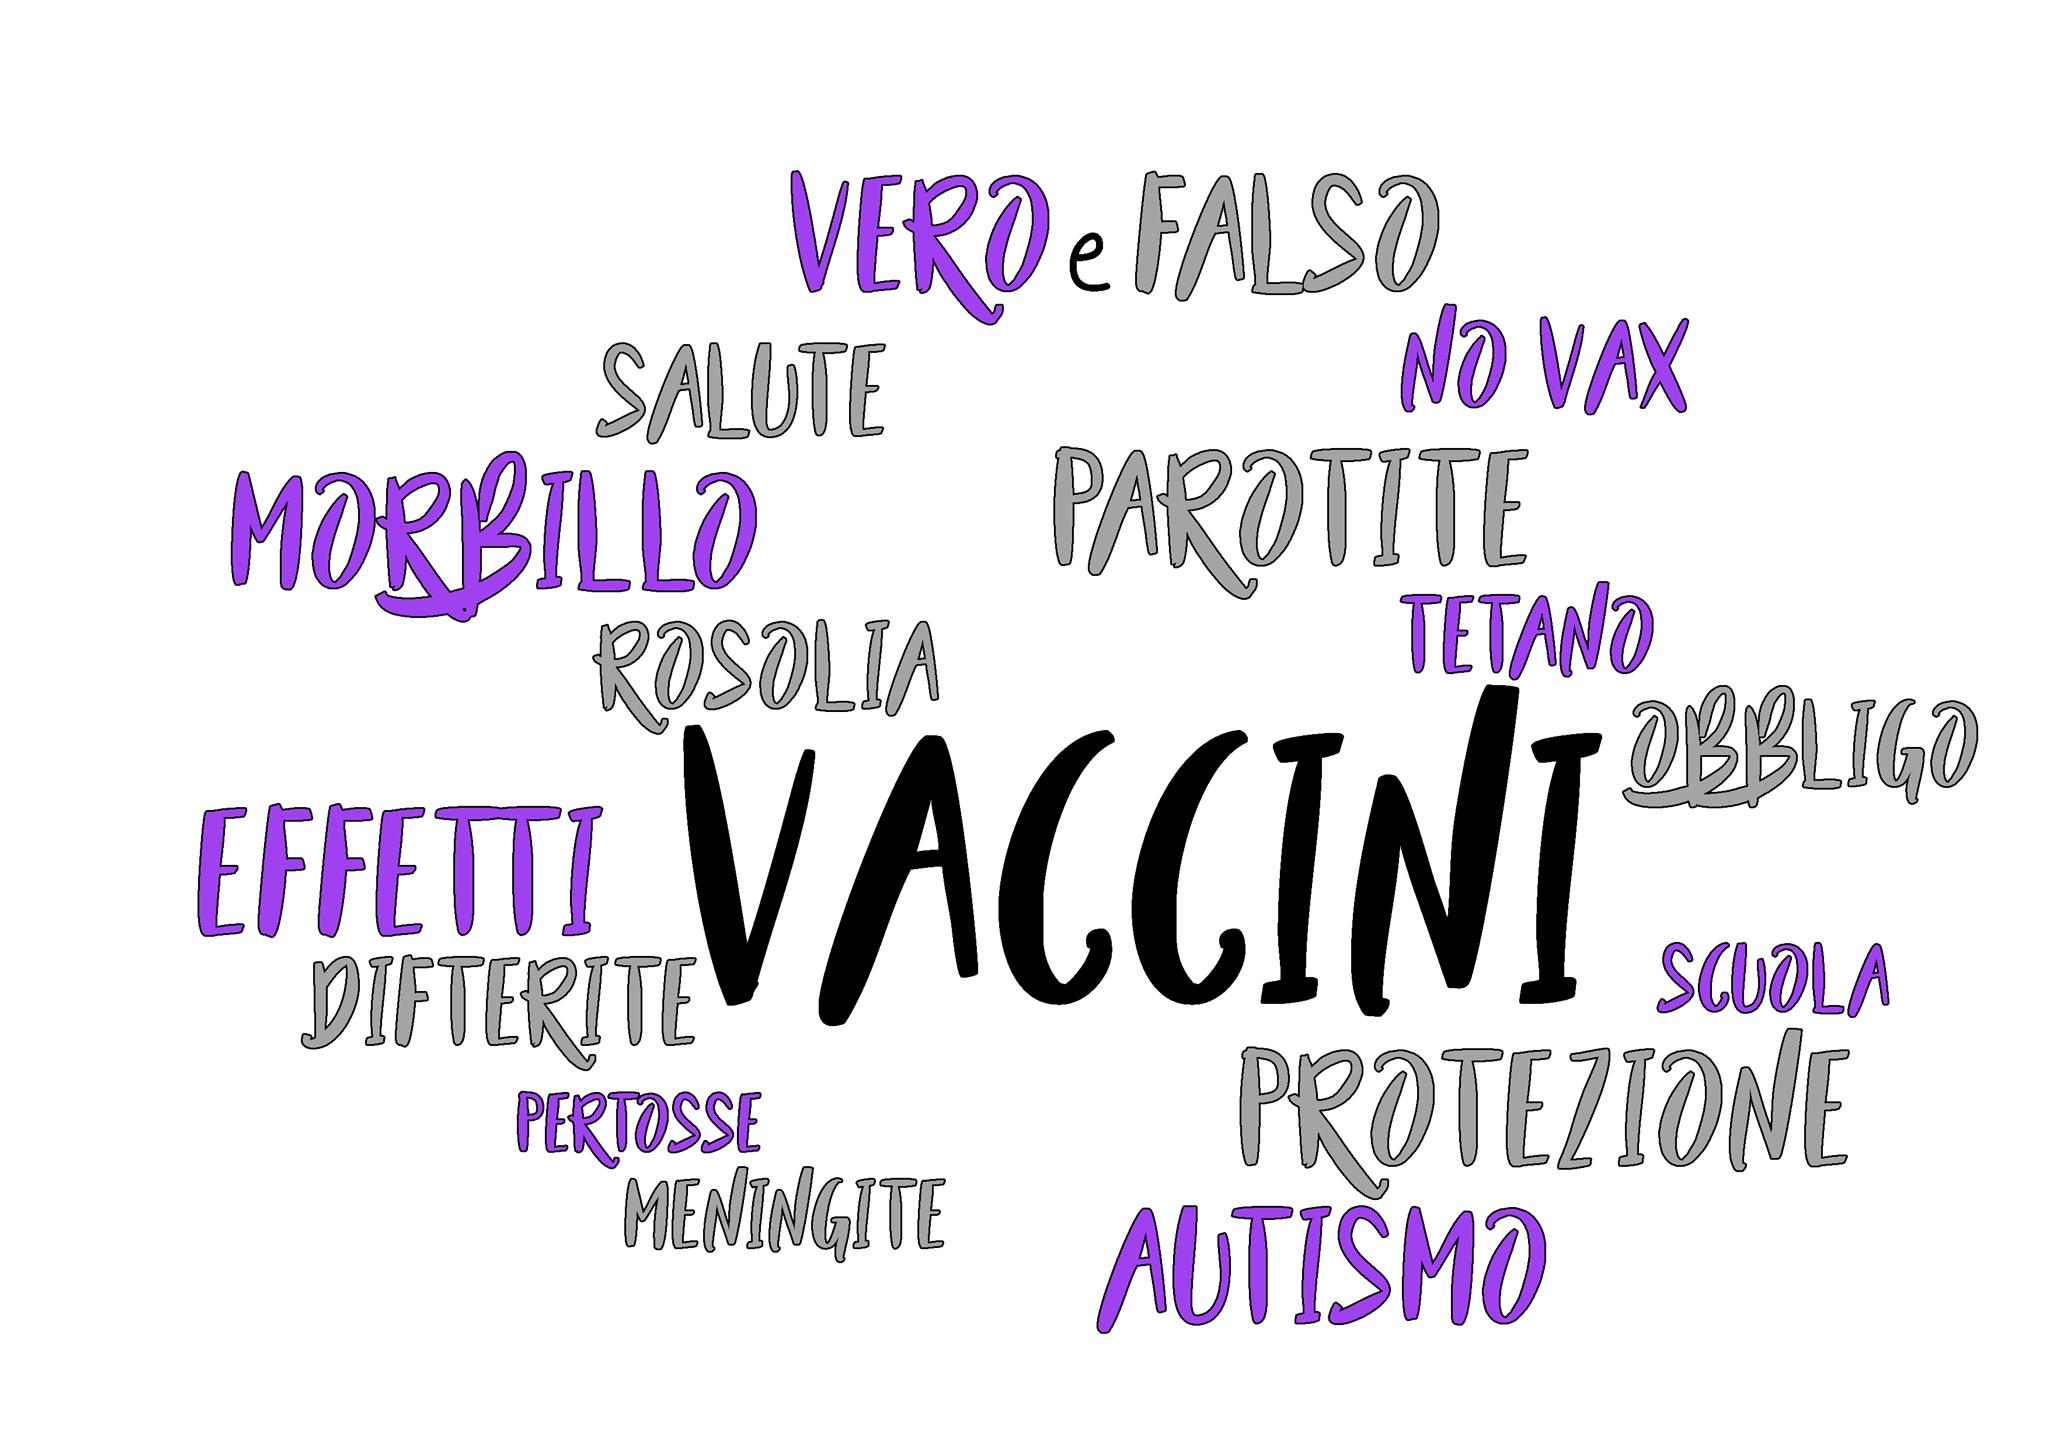 Tra vaccini e autismo non c’è nesso causale